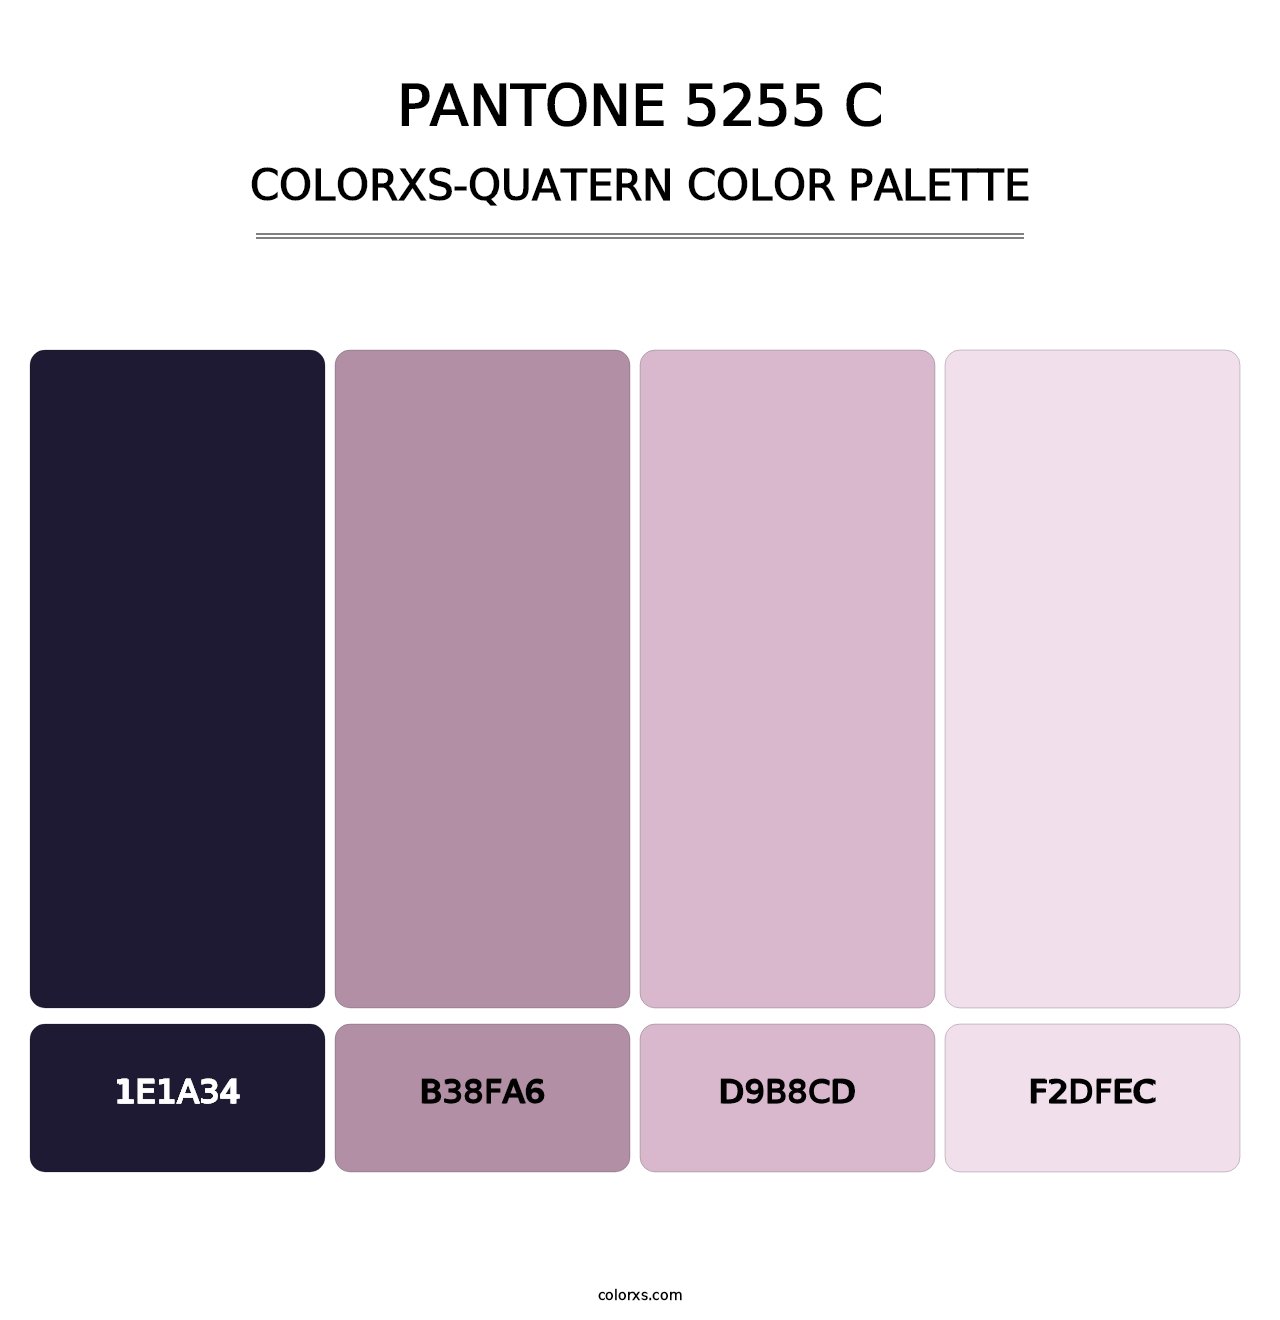 PANTONE 5255 C - Colorxs Quatern Palette